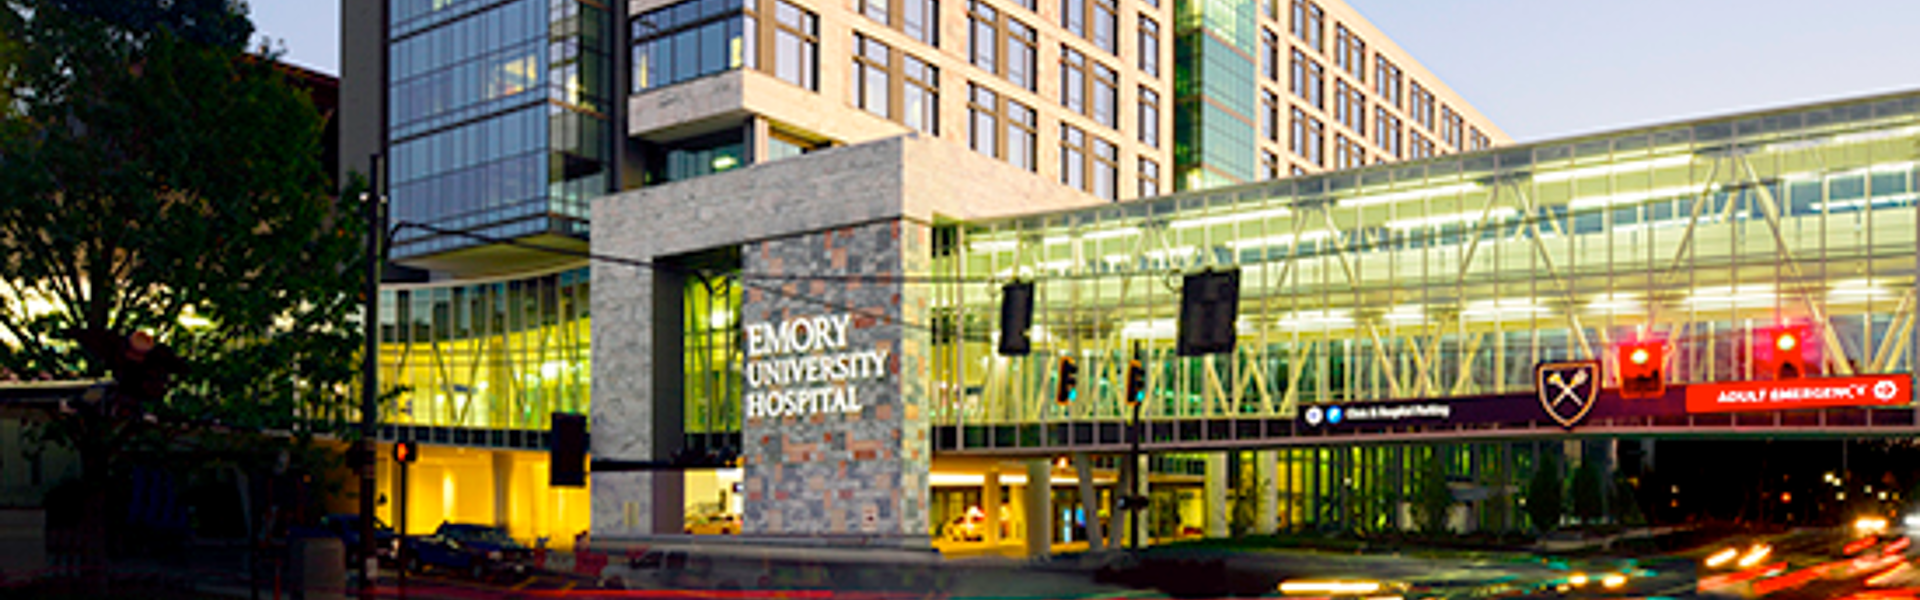 Emory University Hospital Tower Image